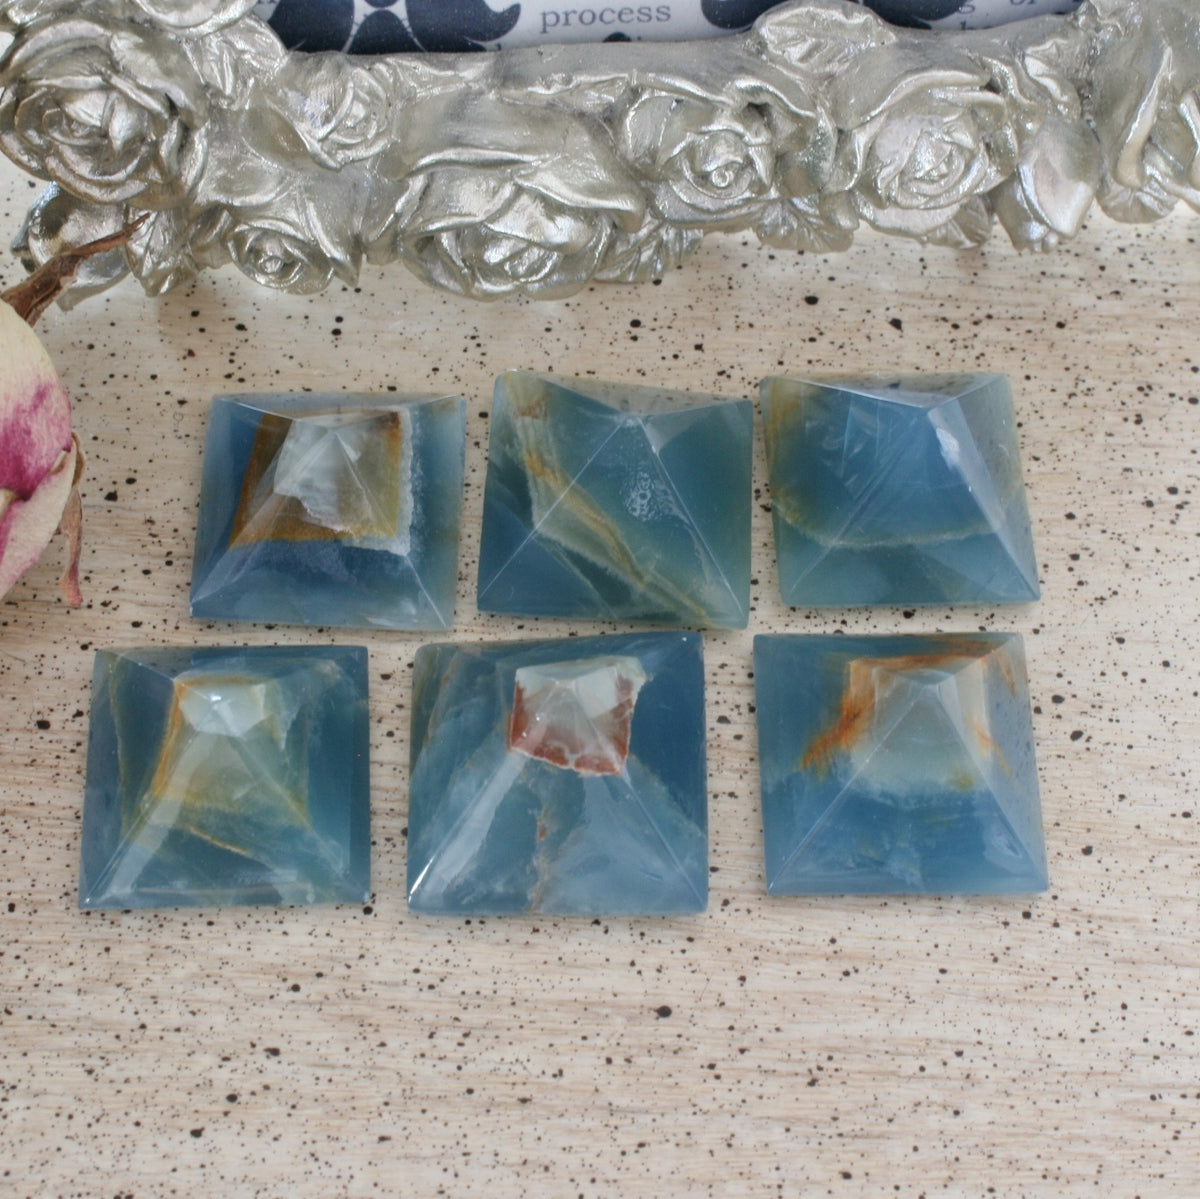 Blue Calcite / Blue Onyx Pyramid from Argentina, also called Lemurian Aquatine Calcite, LGPY5